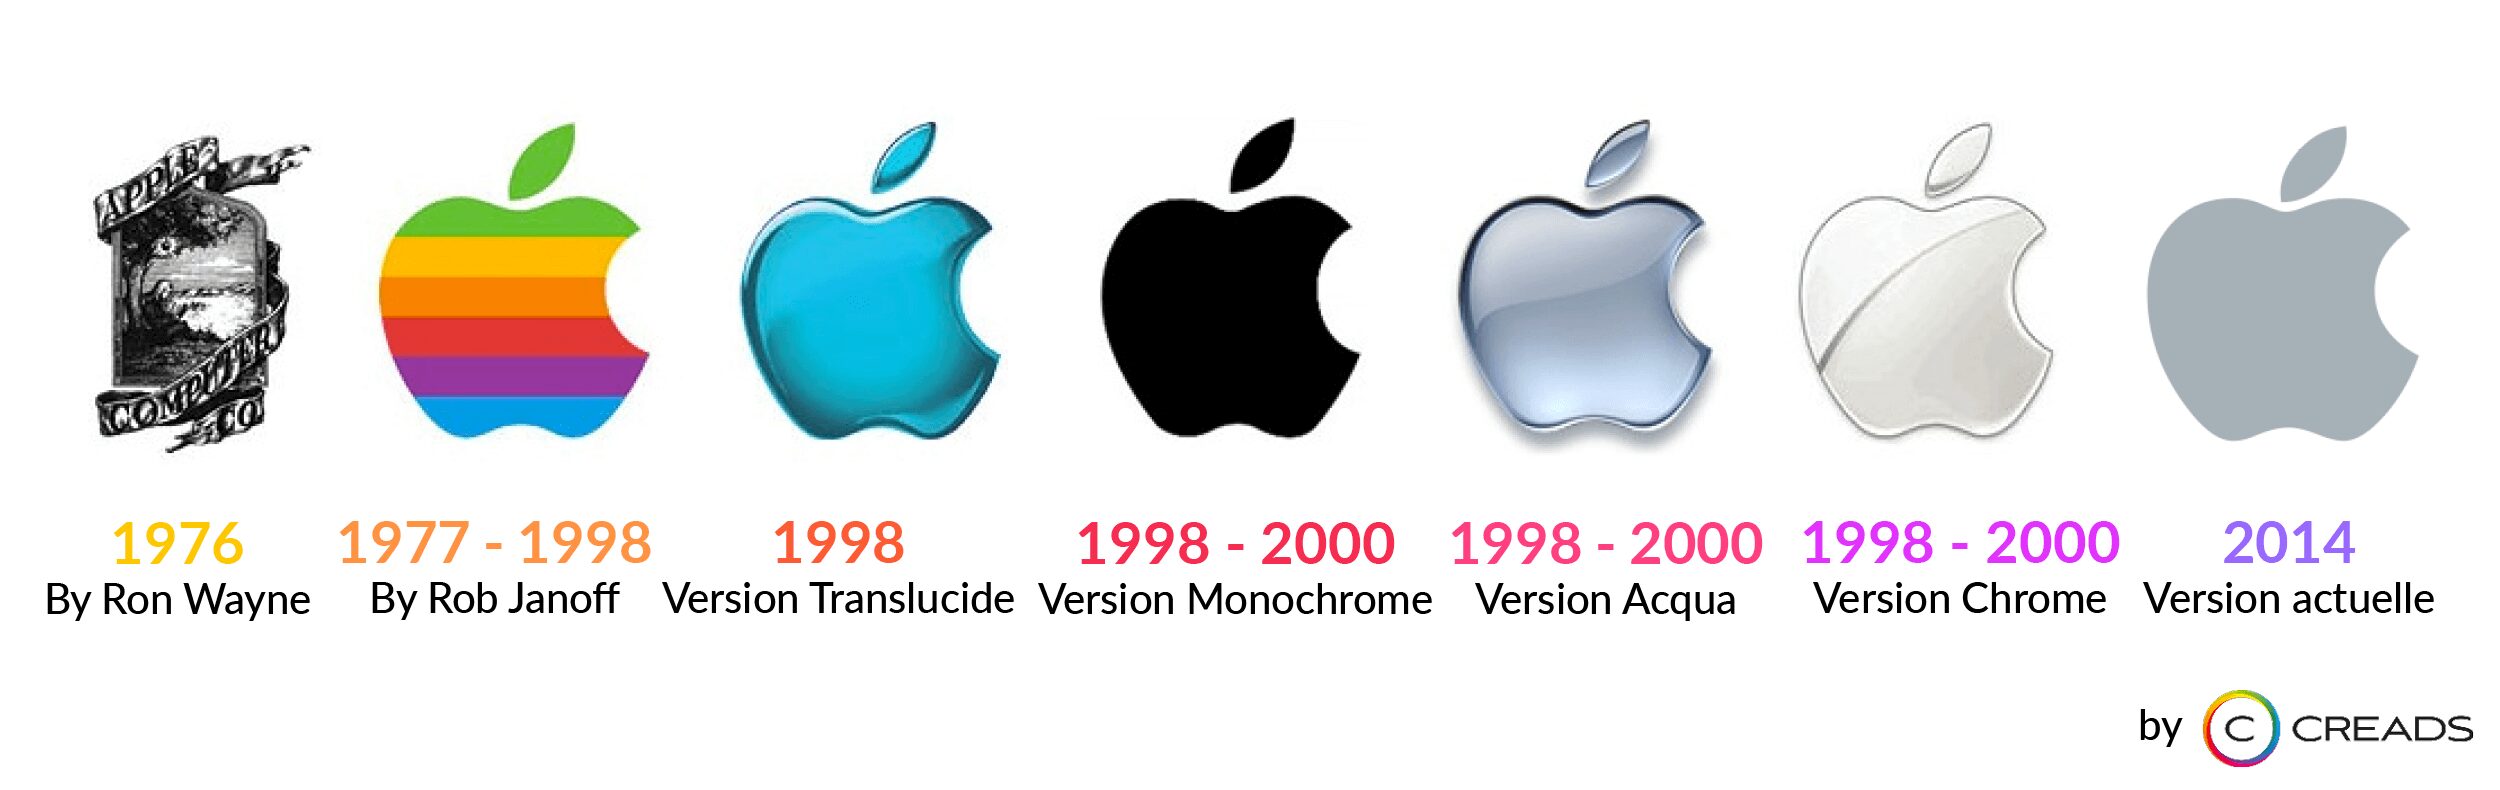 Évolution du logo Apple